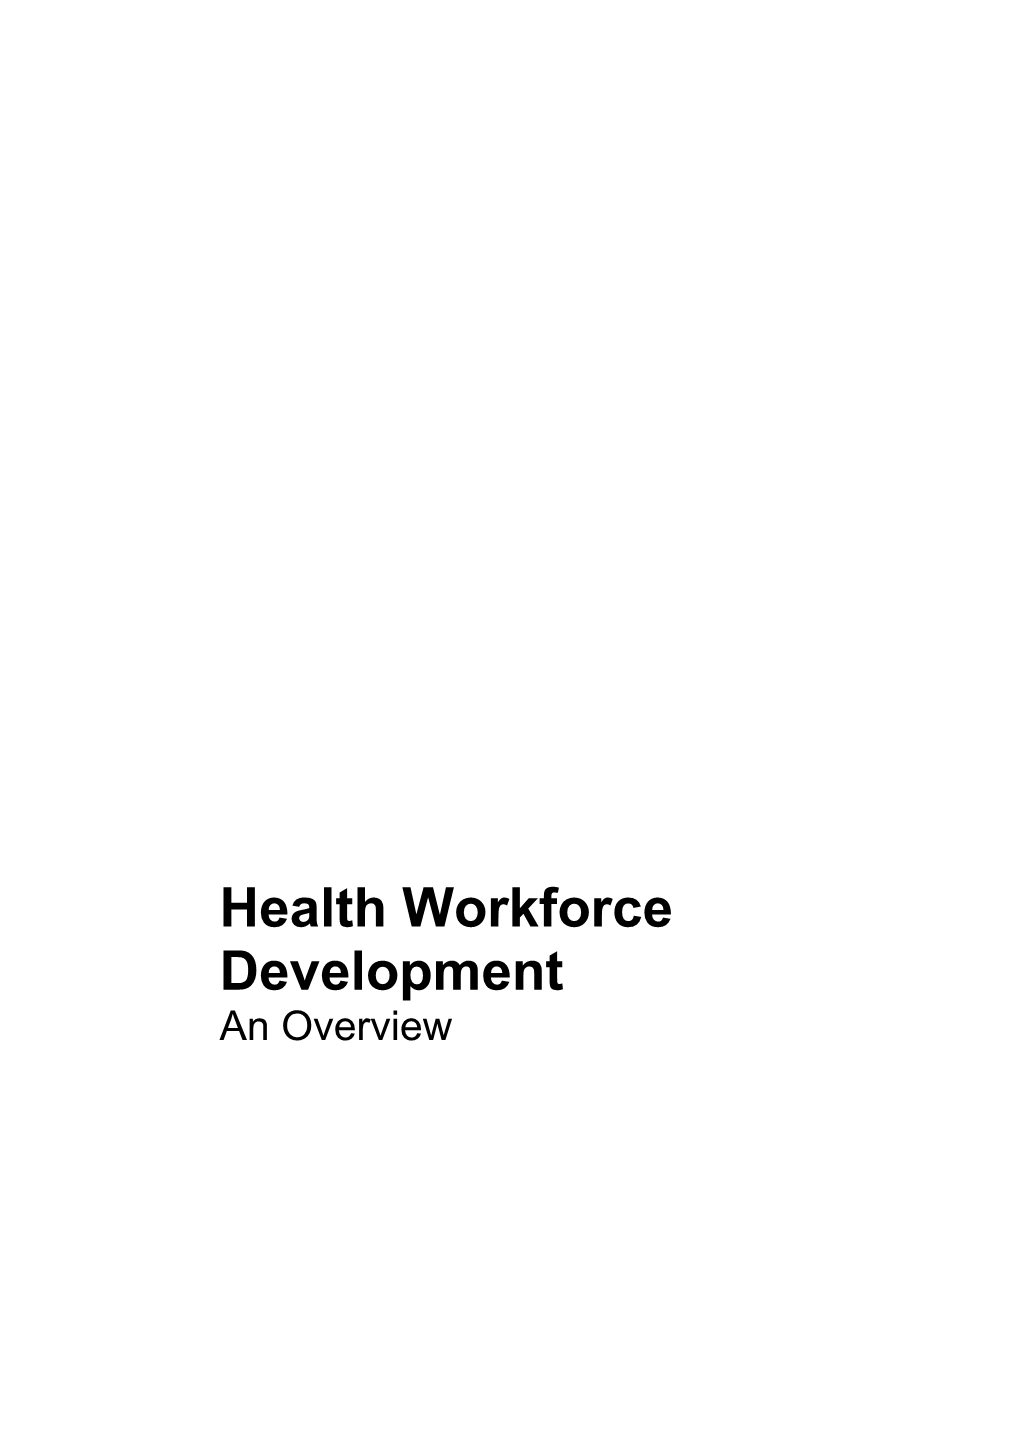 Health Workforce Development